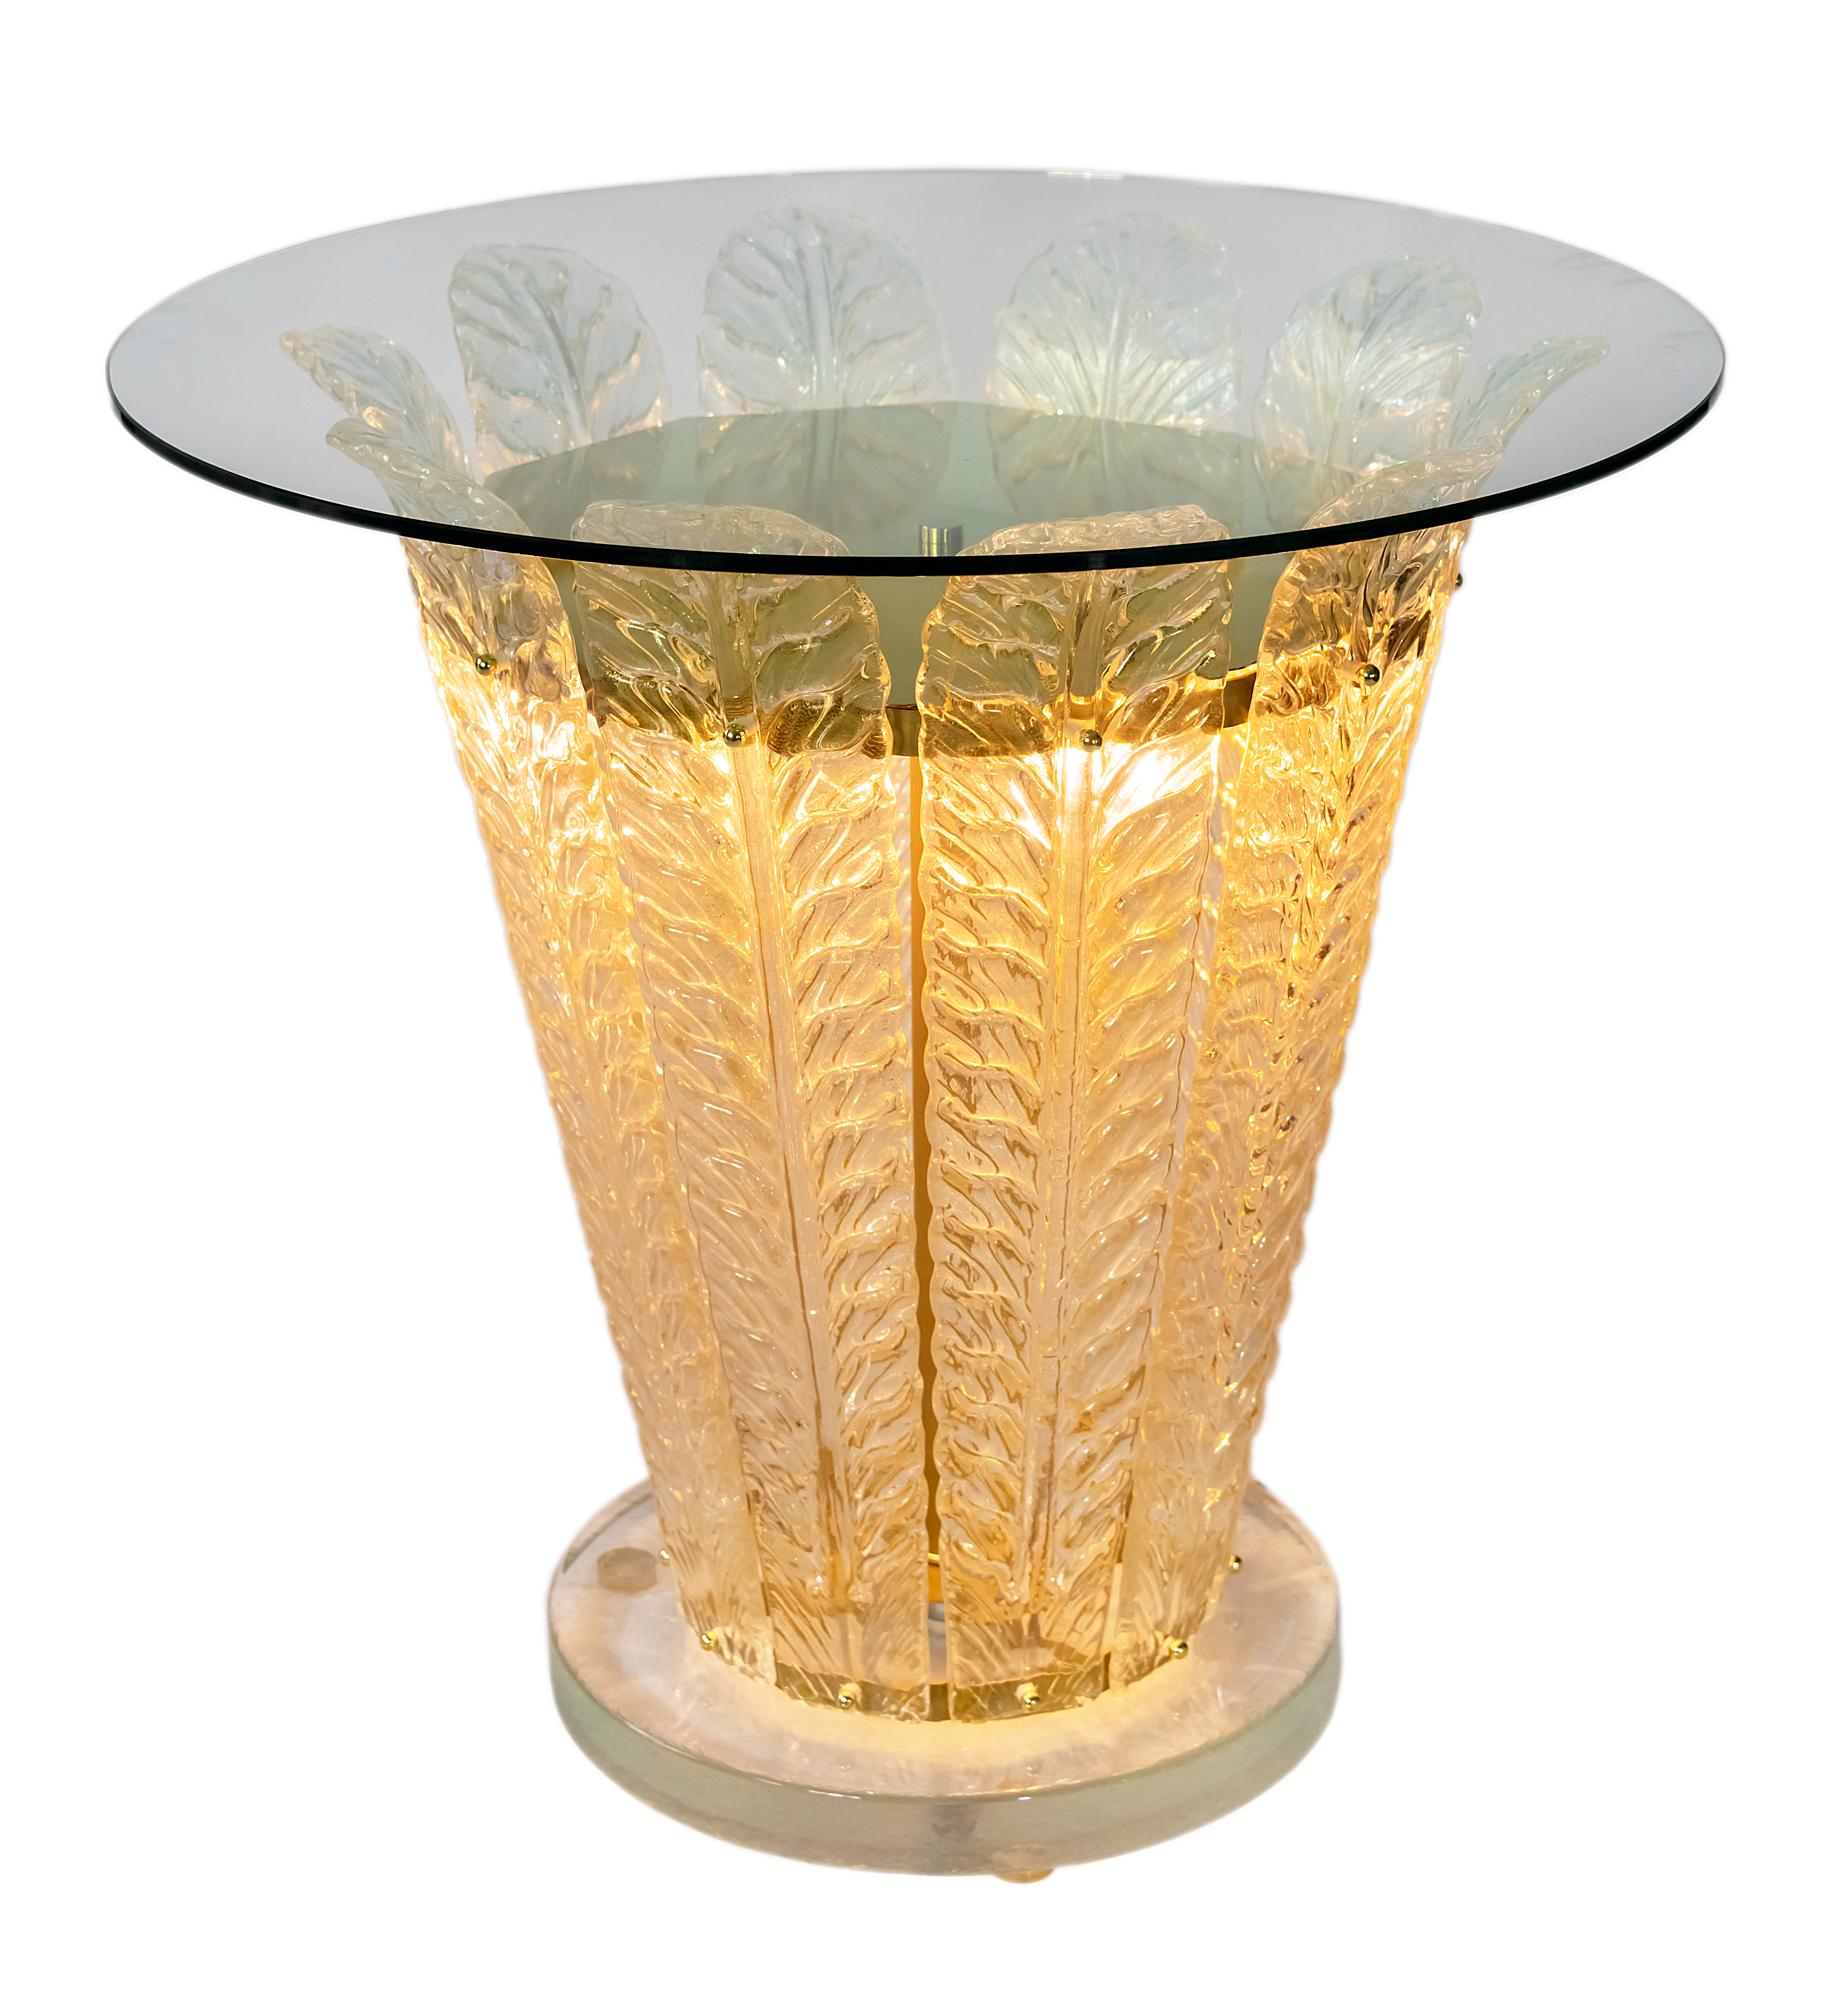 Cette table d'appoint est éclairée comme créée grâce à la fonction d'éclairage à l'intérieur.
La base est en verre massif très épais, décorée de détails en forme de feuilles en verre de Murano faits à la main et d'un plateau en verre trempé.
Il y a